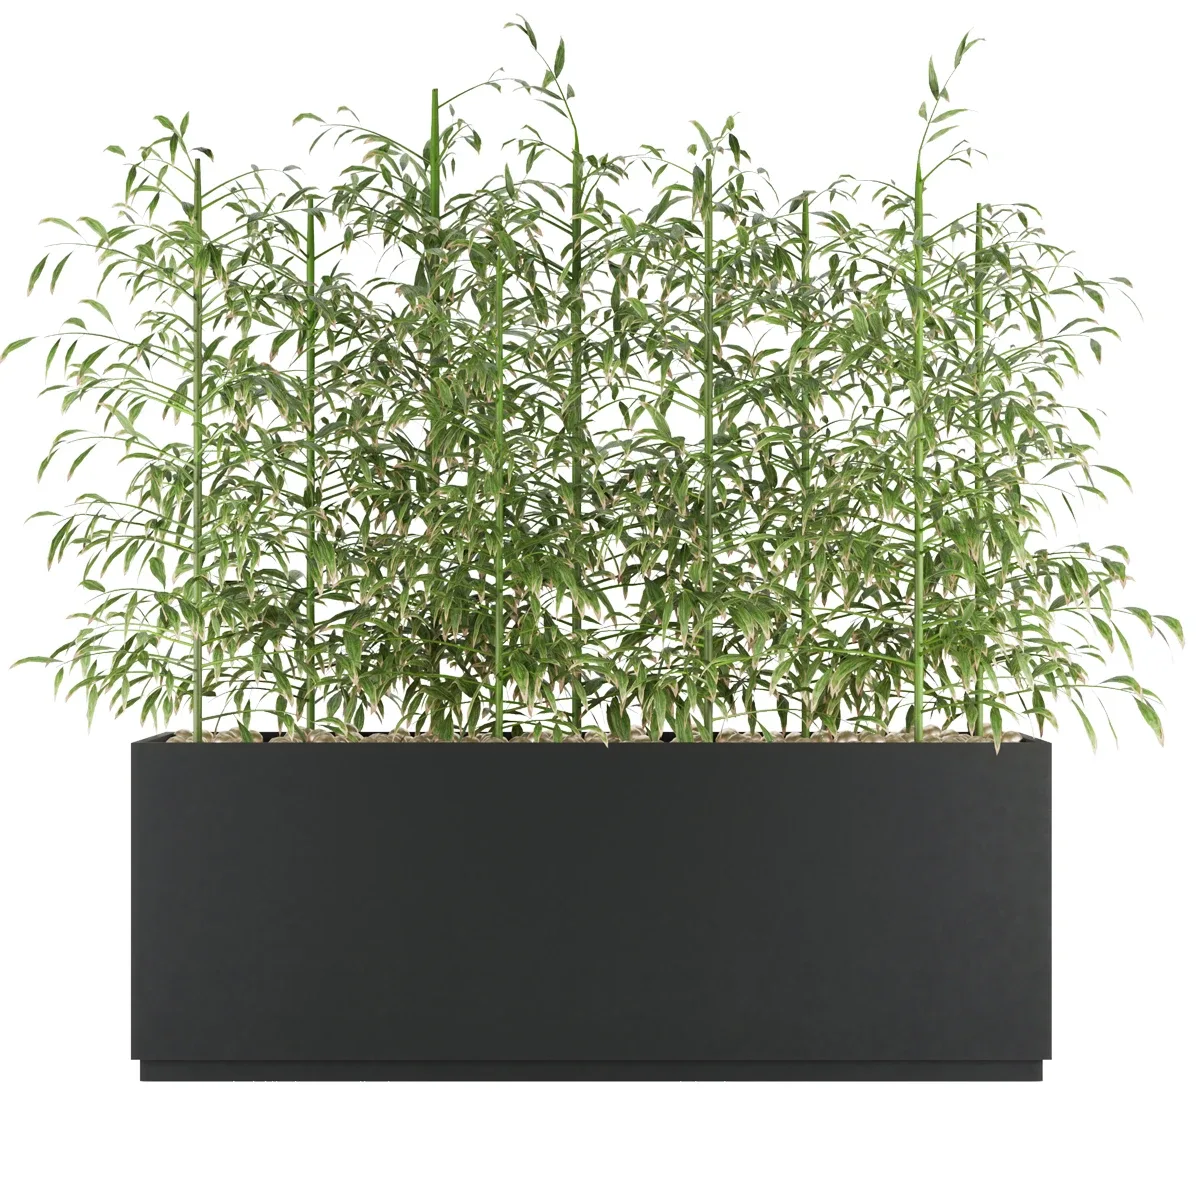 Collection plant vol 94 - bamboo - leaf - blender - 3dmax - cinema 4d